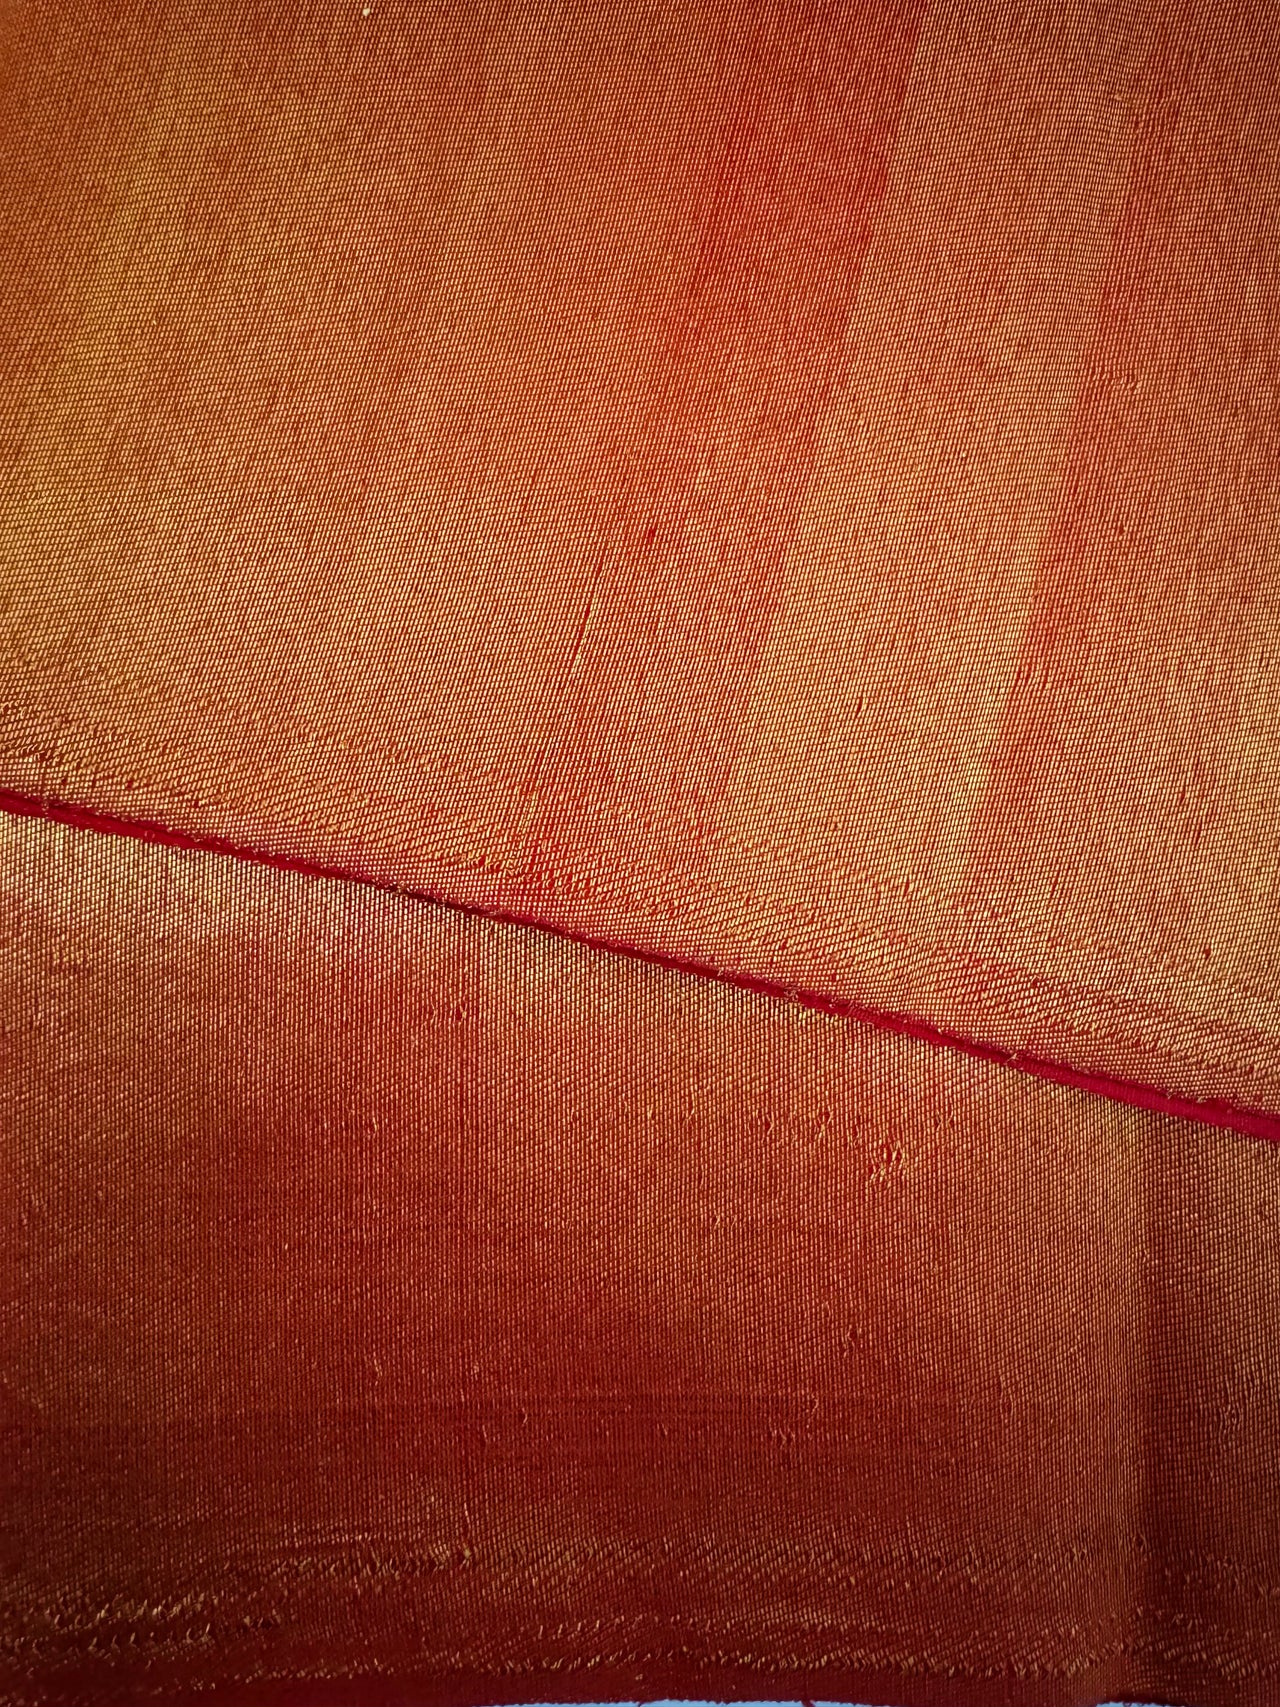 Borderless Metallic Red Kanchipuram/Kanchivaram Pure Silk Saree | Gold Zari | Handwoven | Ships from California